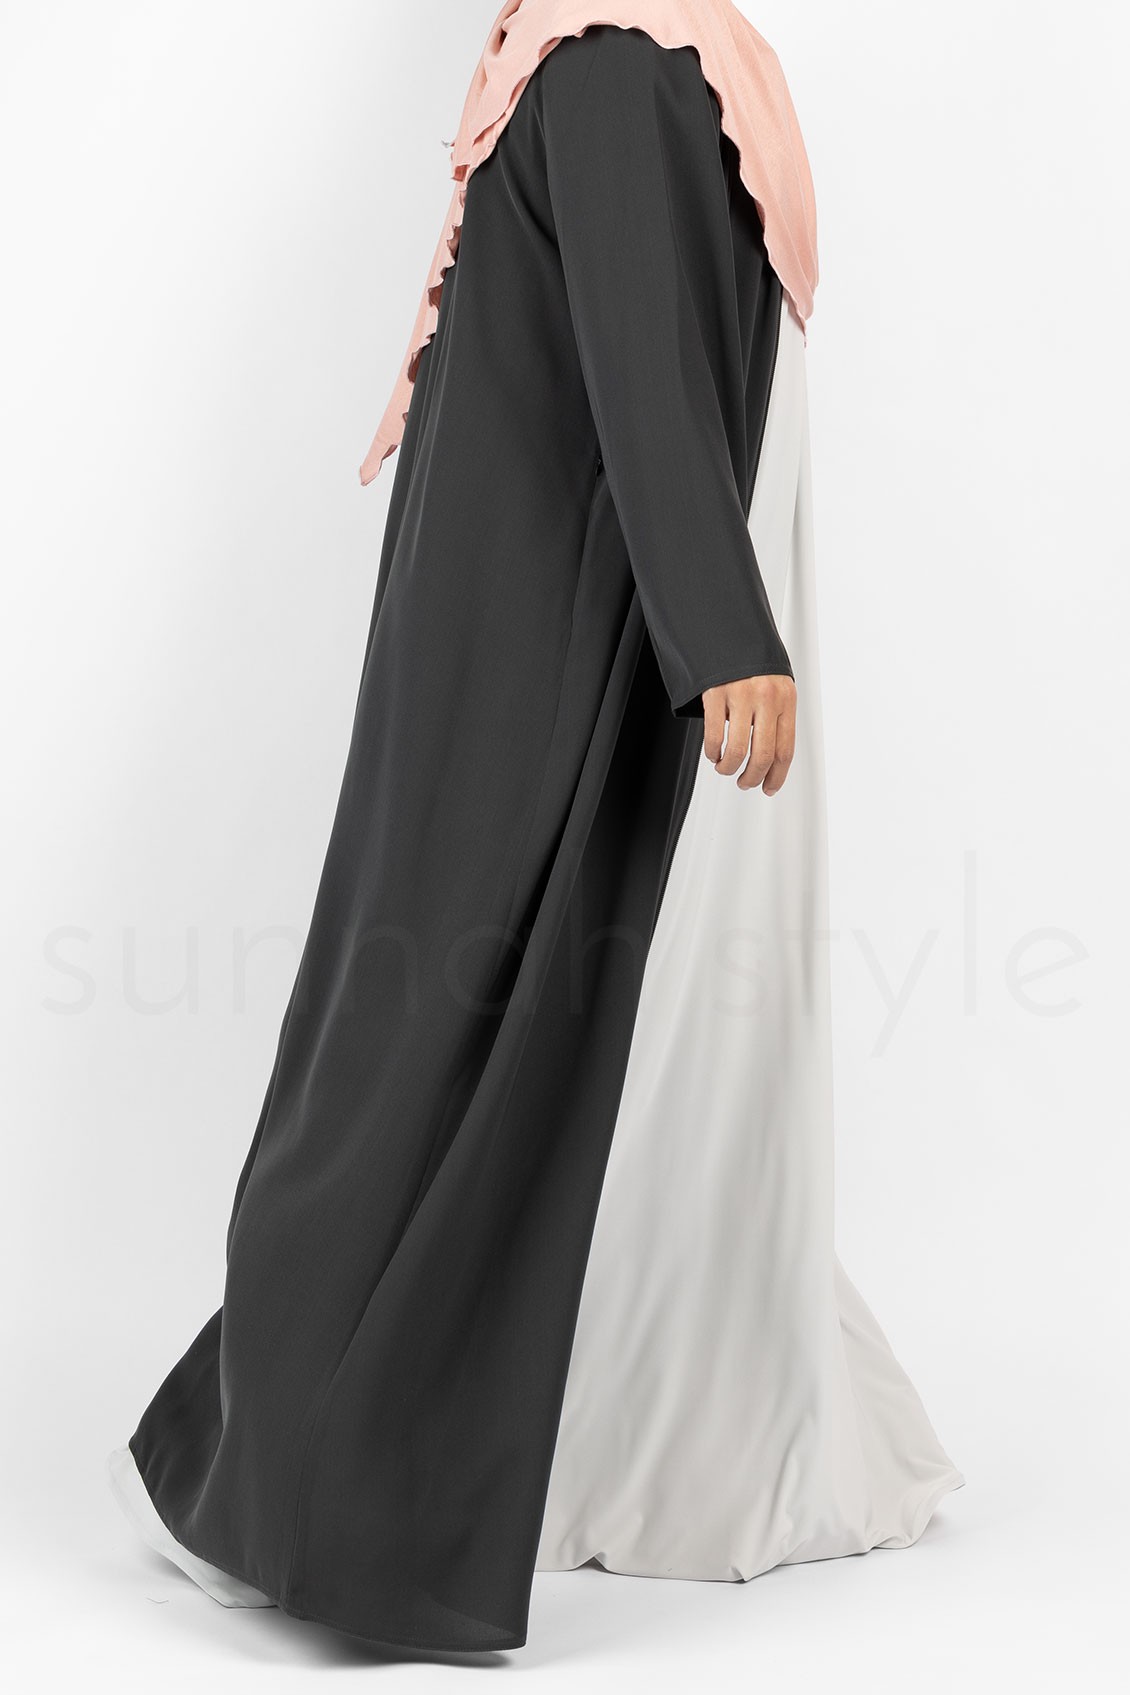 Sunnah Style Sleeveless Jersey Abaya Glacier Grey